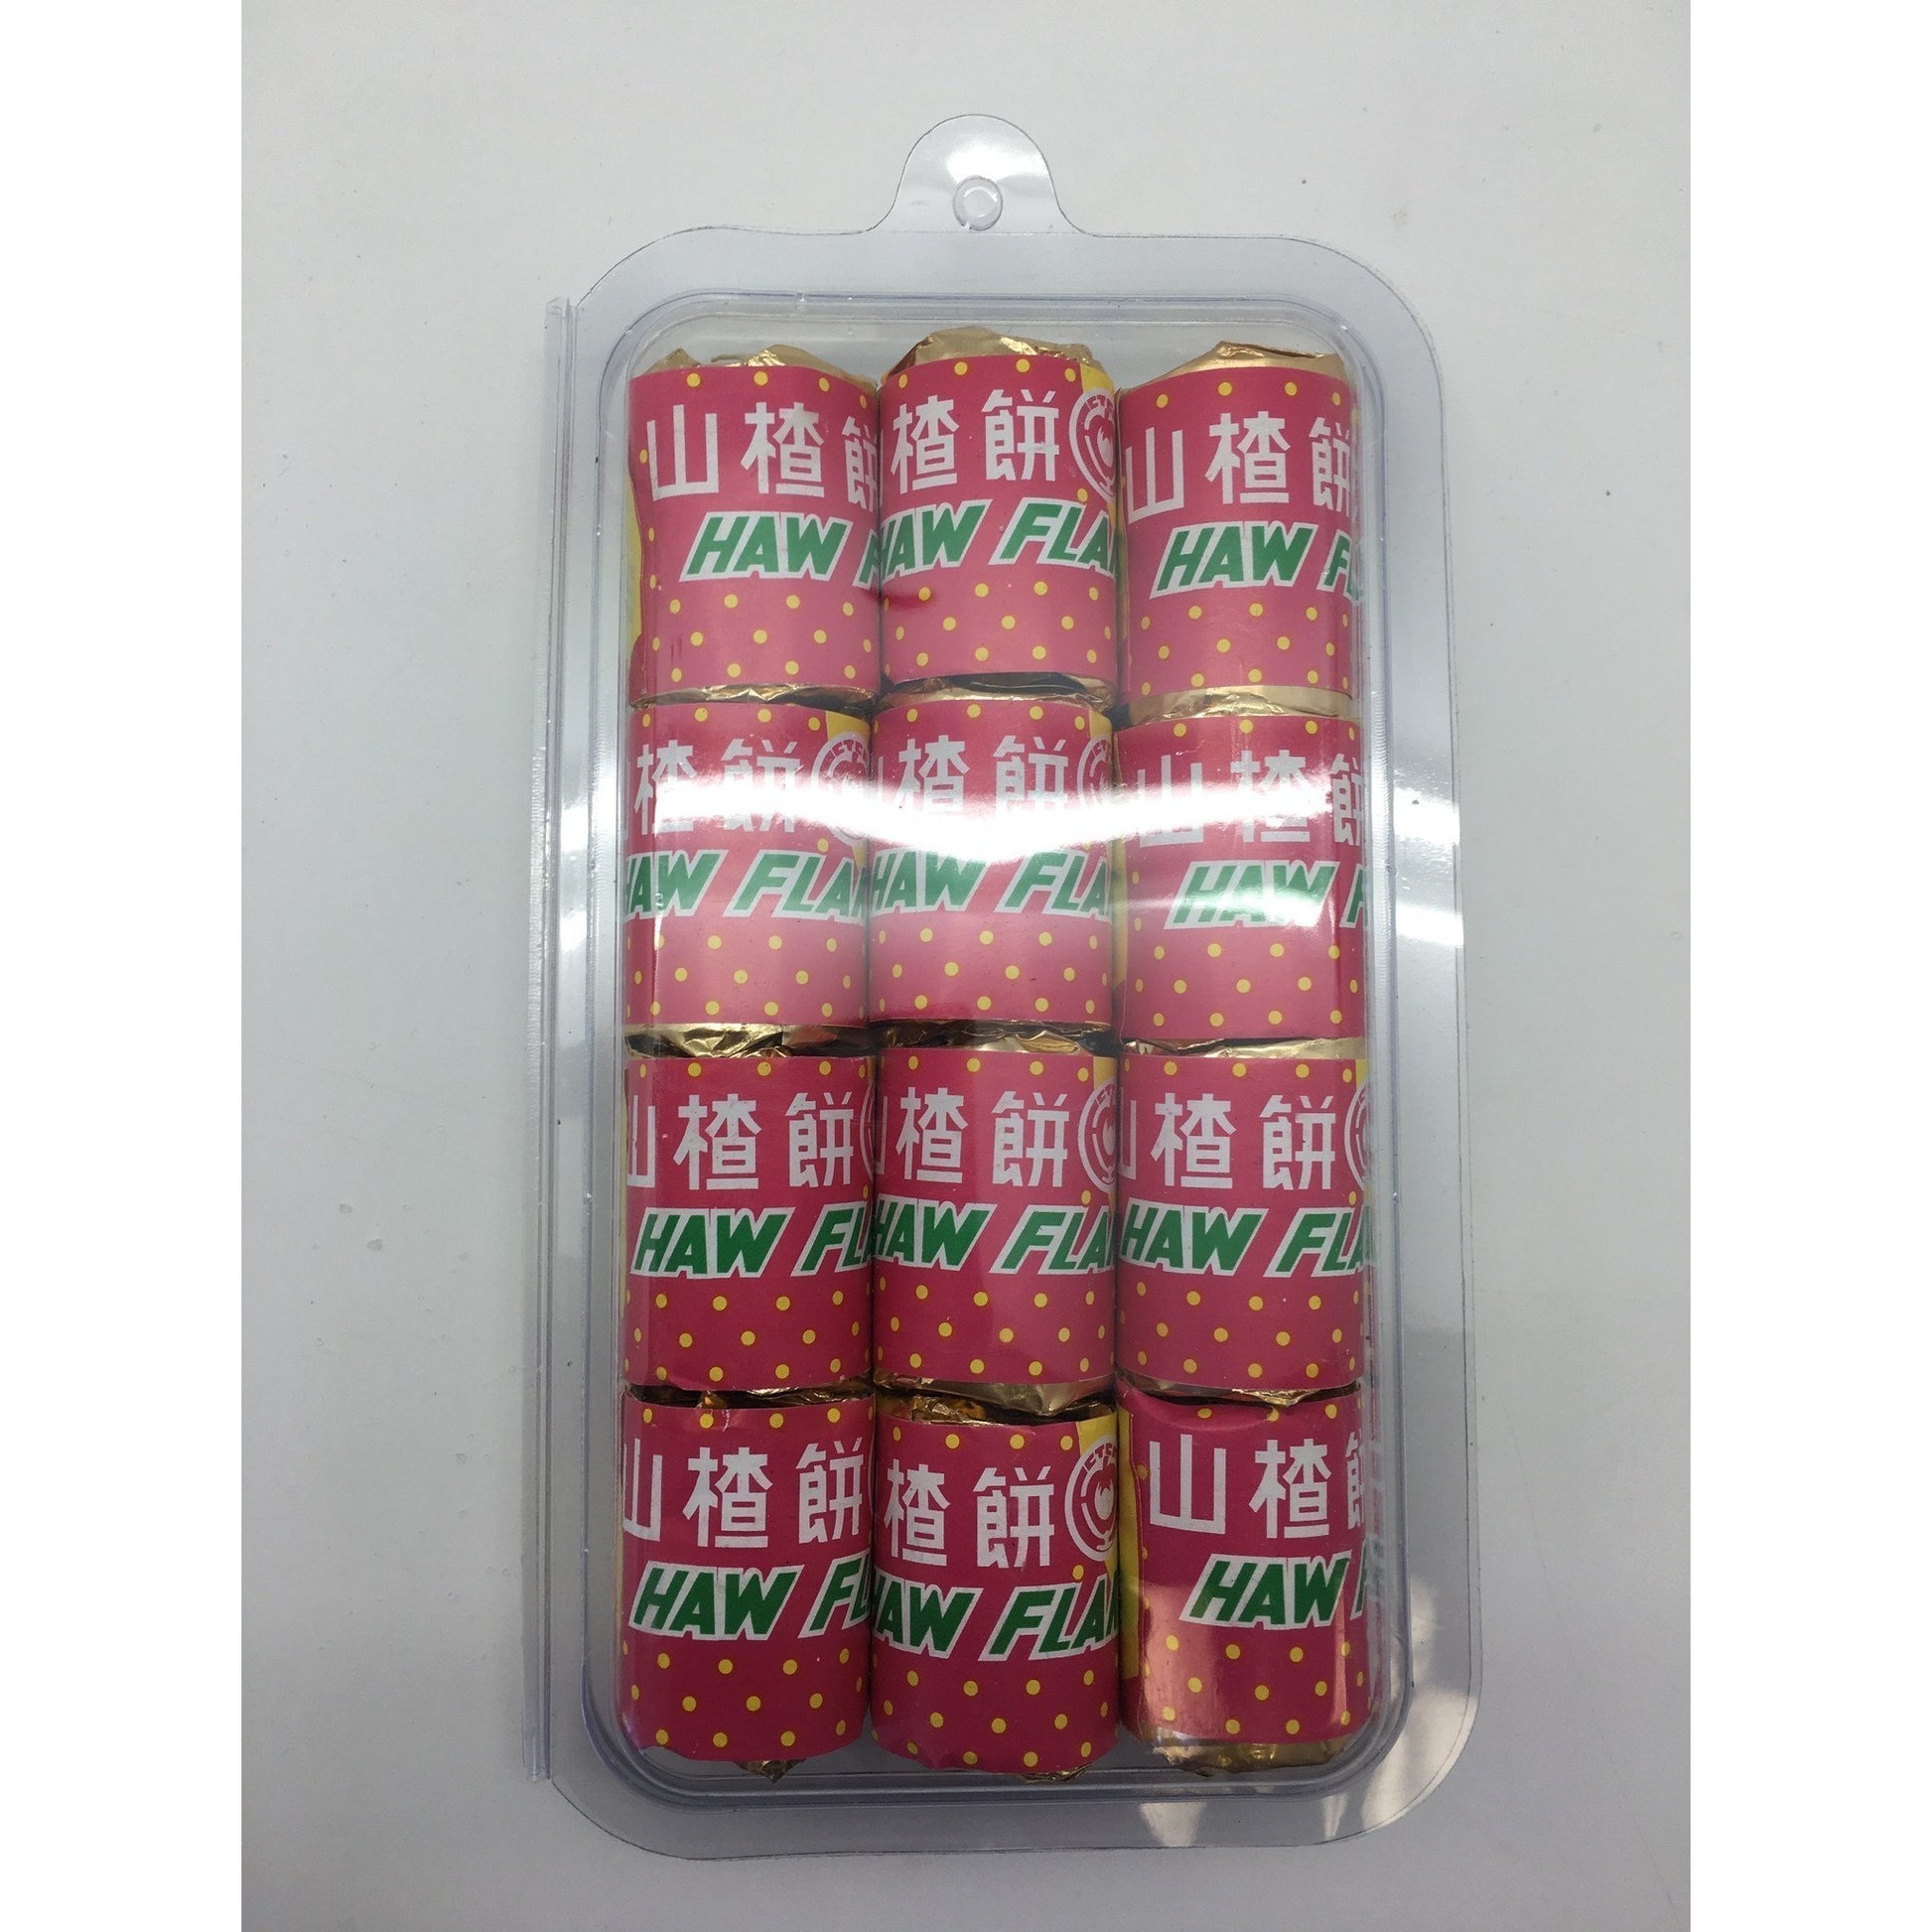 J030L Camellia Angel Brand - Haw Flake 12x27.5g - 48 box / 1 CTN - New Eastland Pty Ltd - Asian food wholesalers